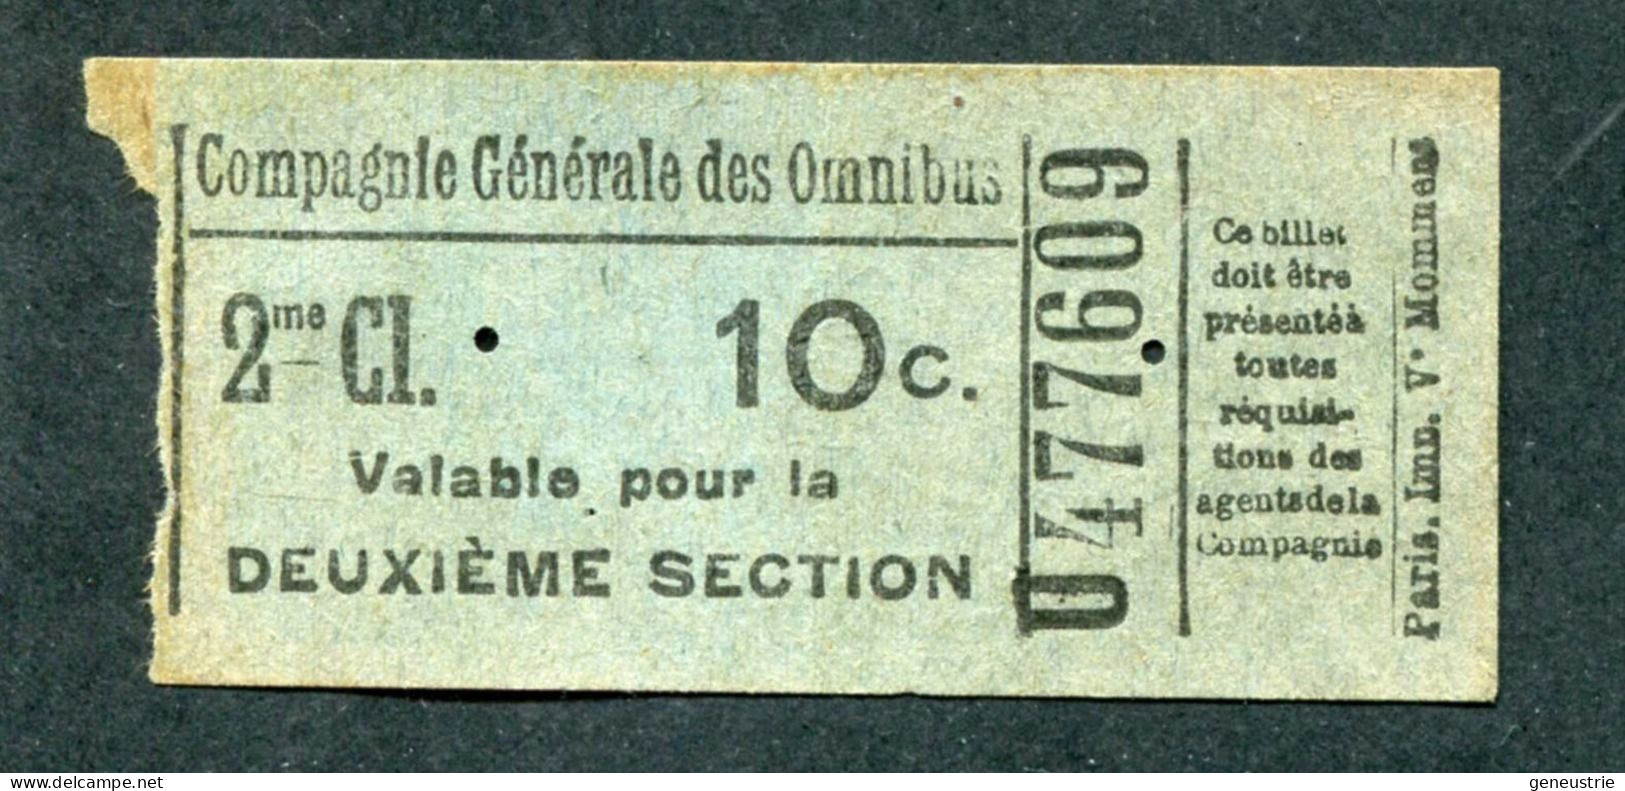 Ticket De Tramways Parisiens (avant 1921) Compagnie Générale Des Omnibus (CGO) 2e Classe 10c - Paris" Tramway - Tram - Europe